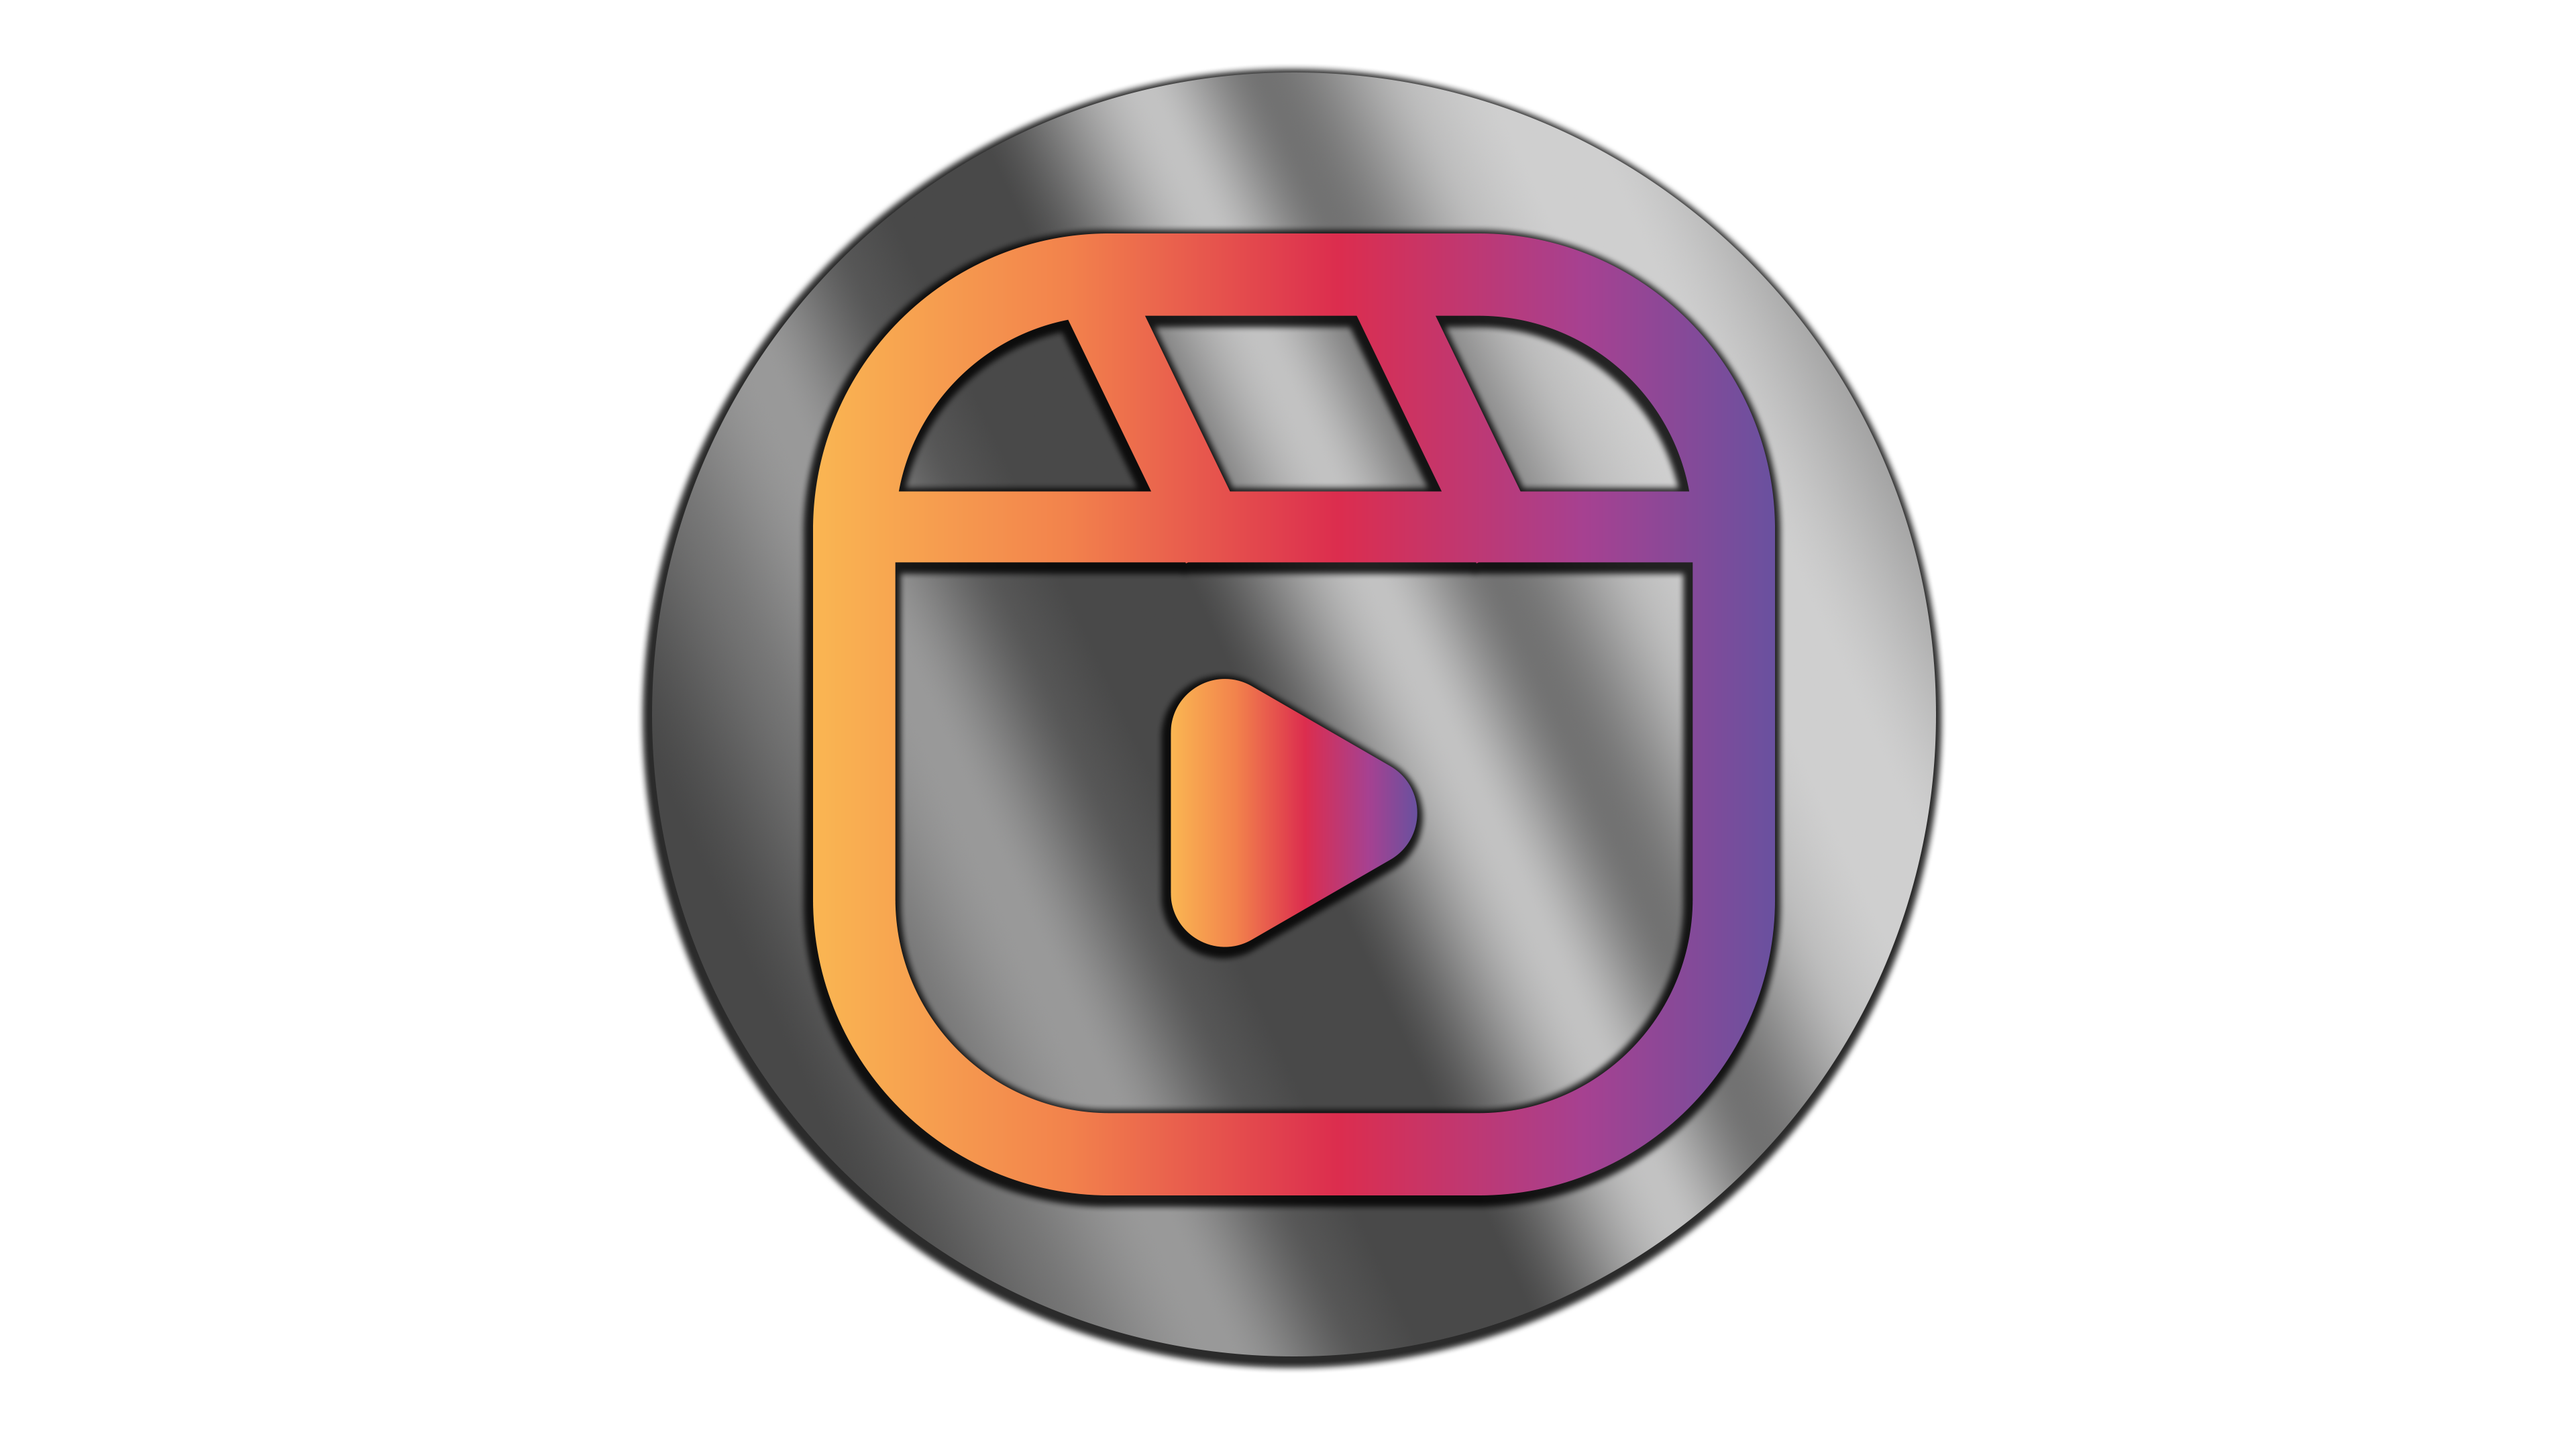 instagram reel symbol HD png free download - veeForu